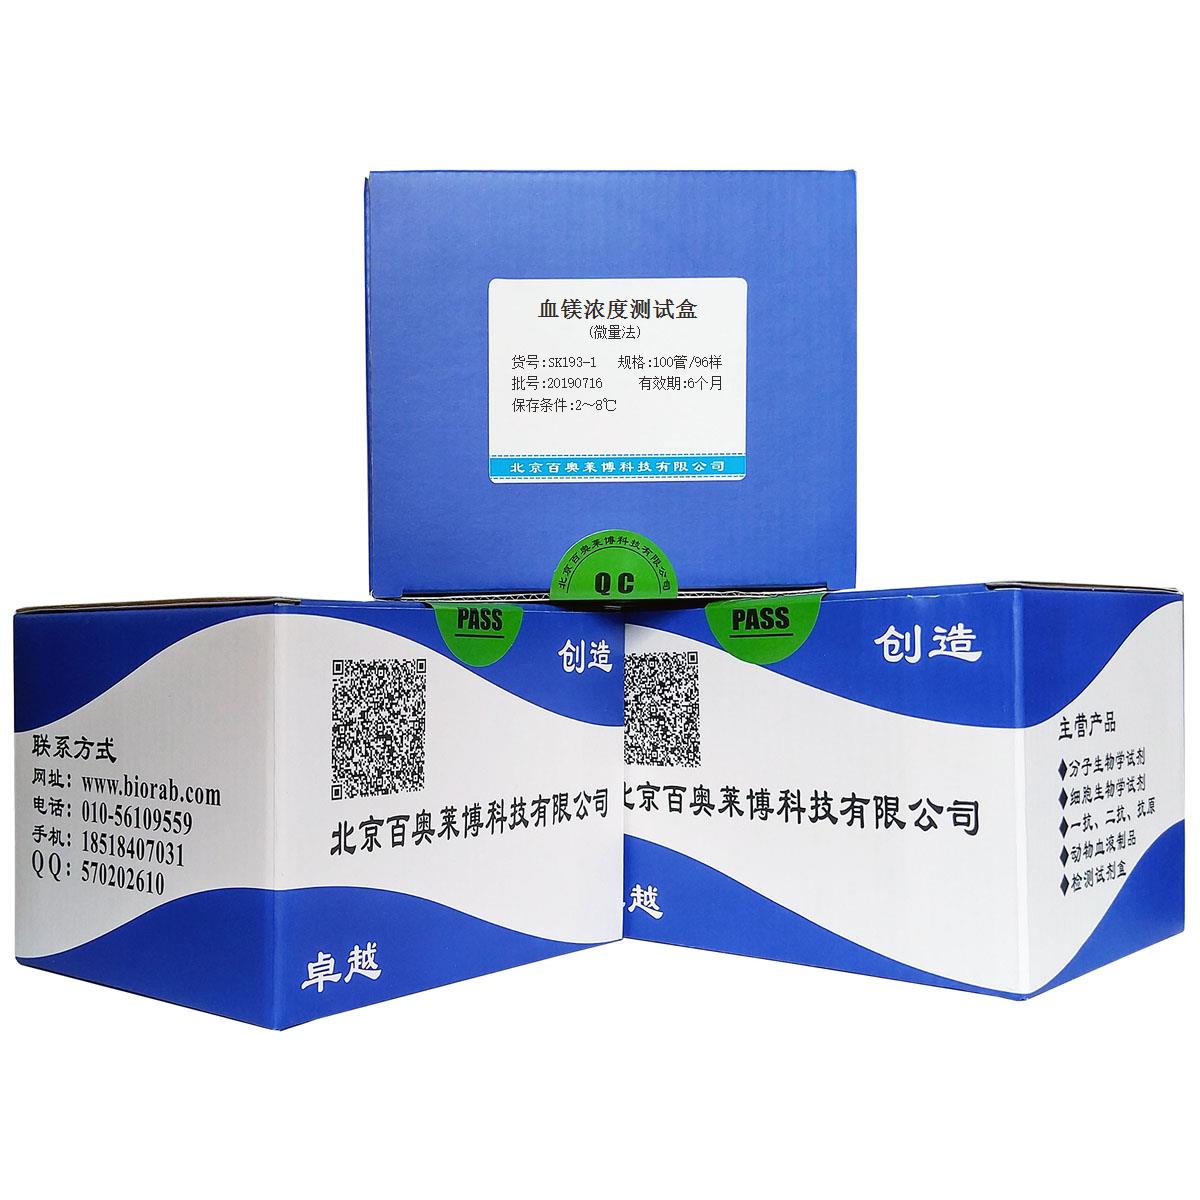 血镁浓度测试盒(微量法)北京现货